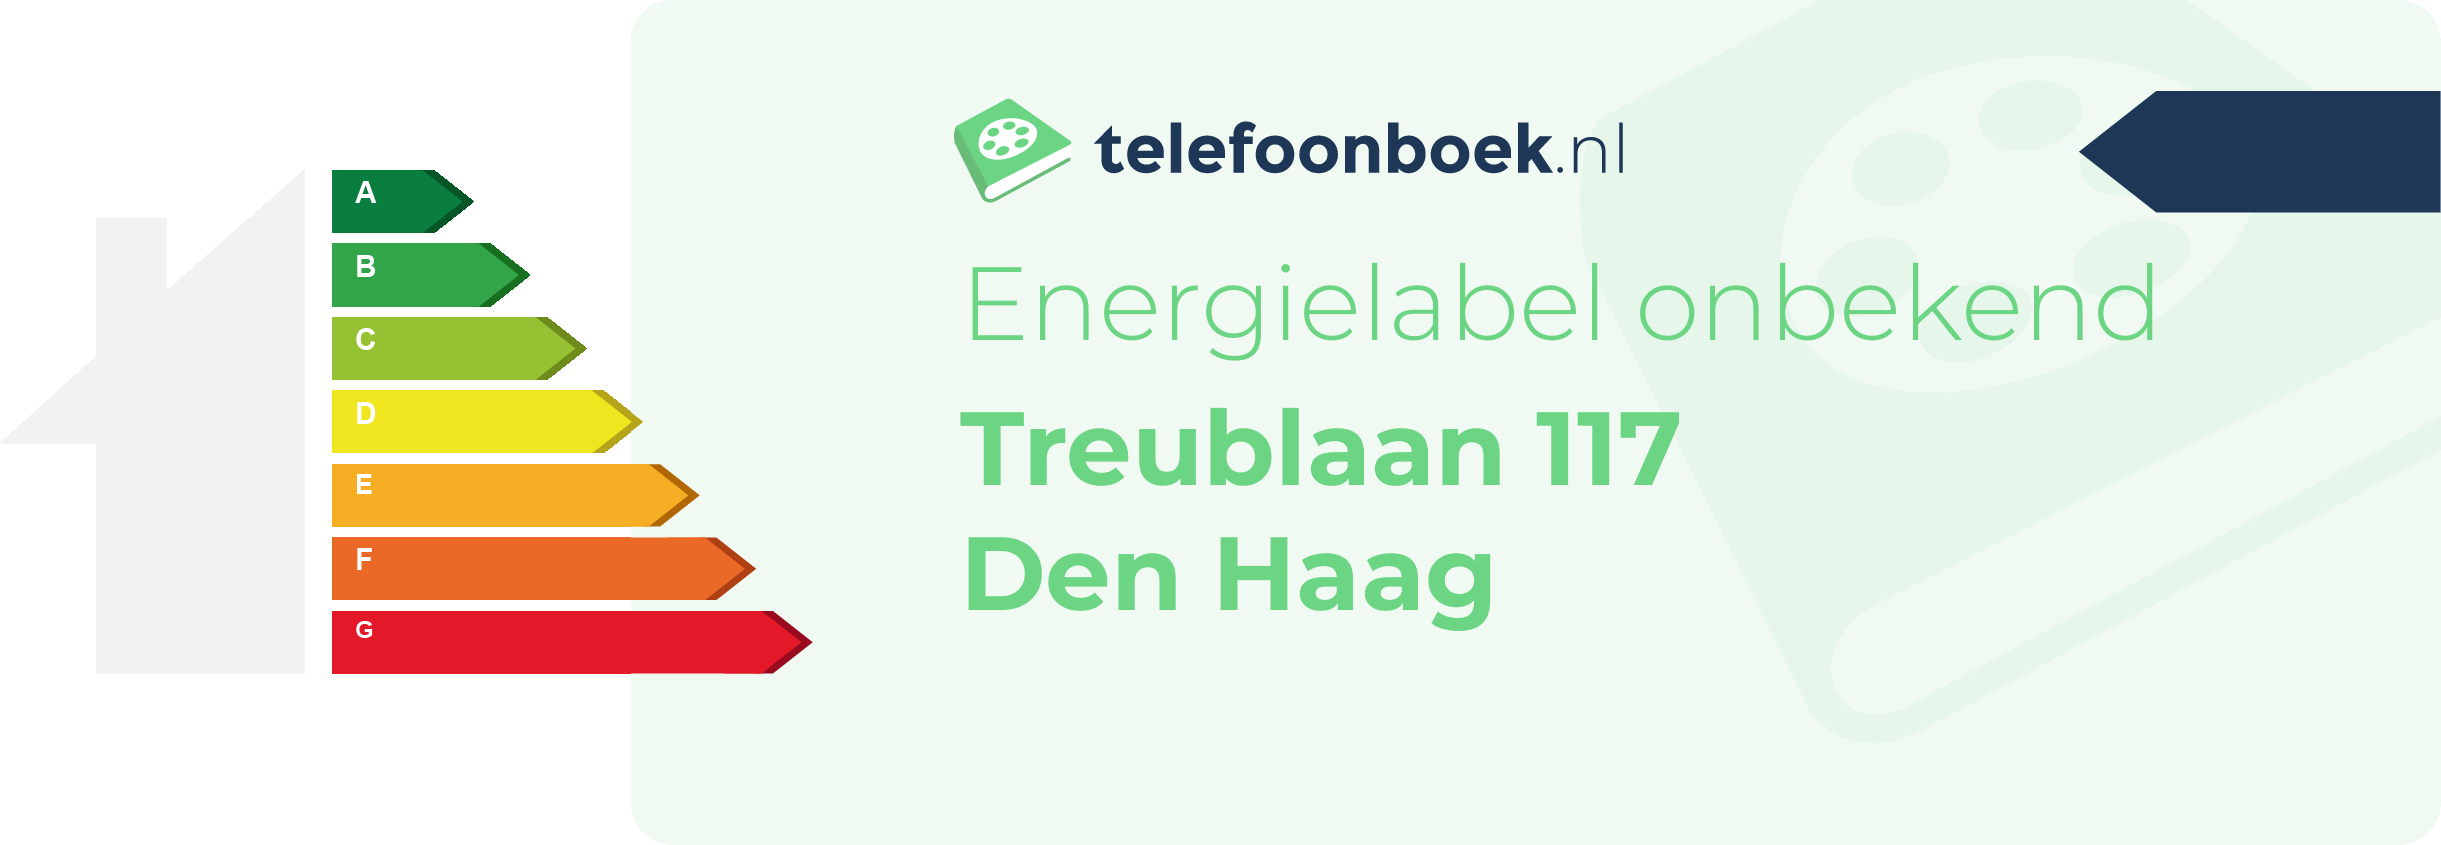 Energielabel Treublaan 117 Den Haag